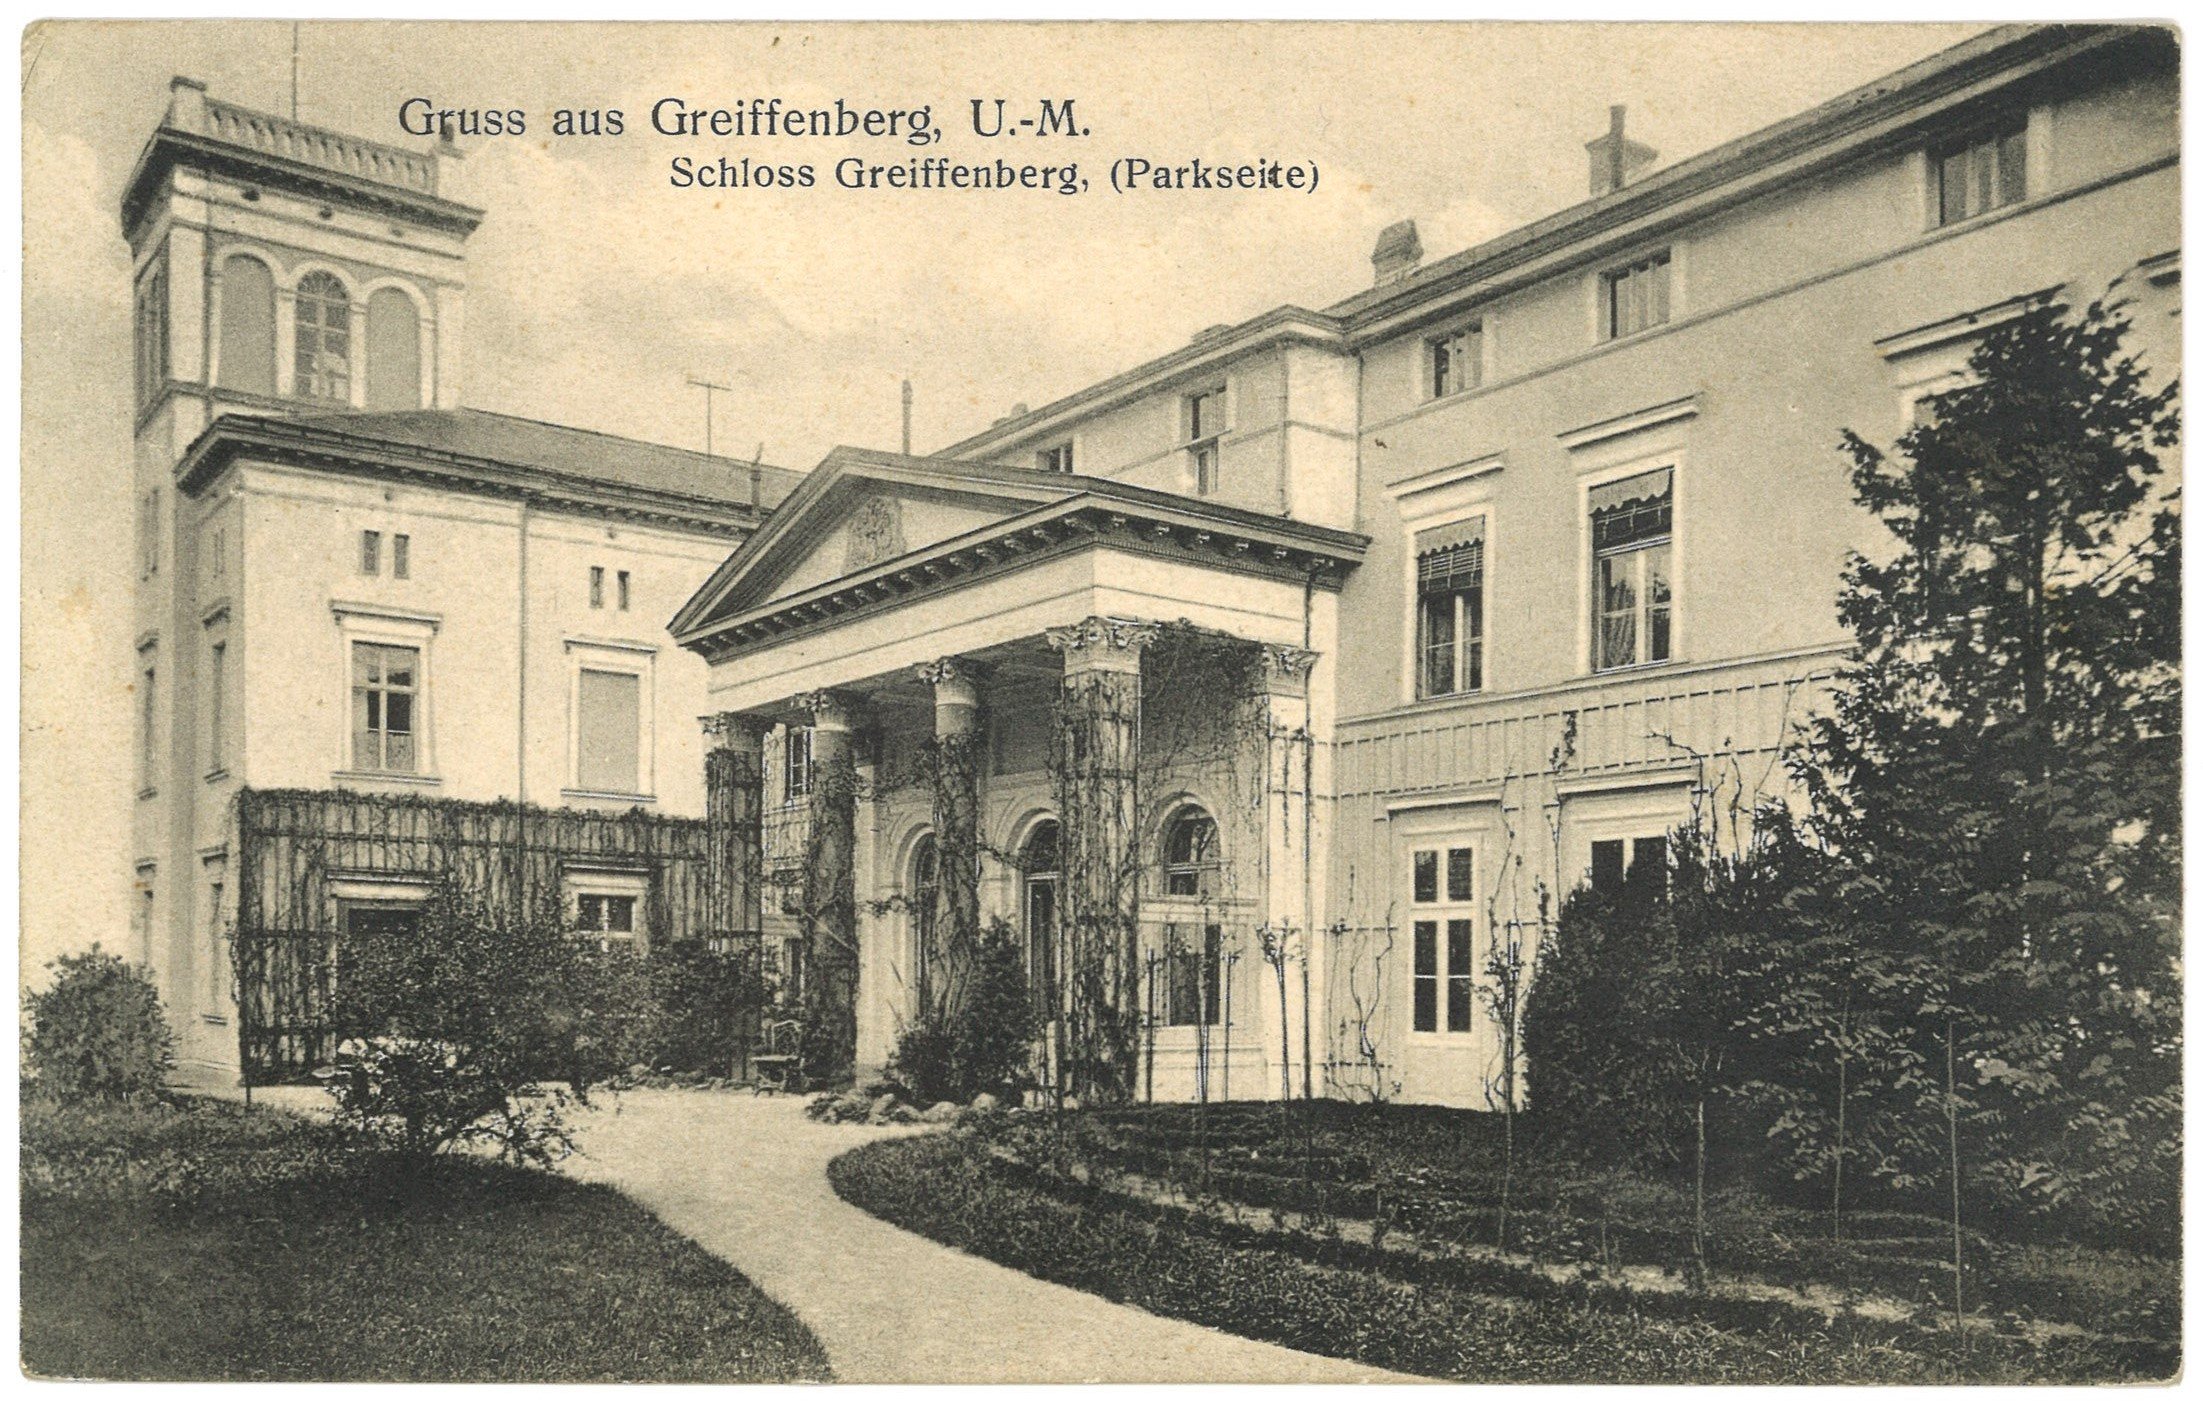 Greiffenberg (Uckermark): Herrenhaus, Gartenseite (Landesgeschichtliche Vereinigung für die Mark Brandenburg e.V. CC BY)